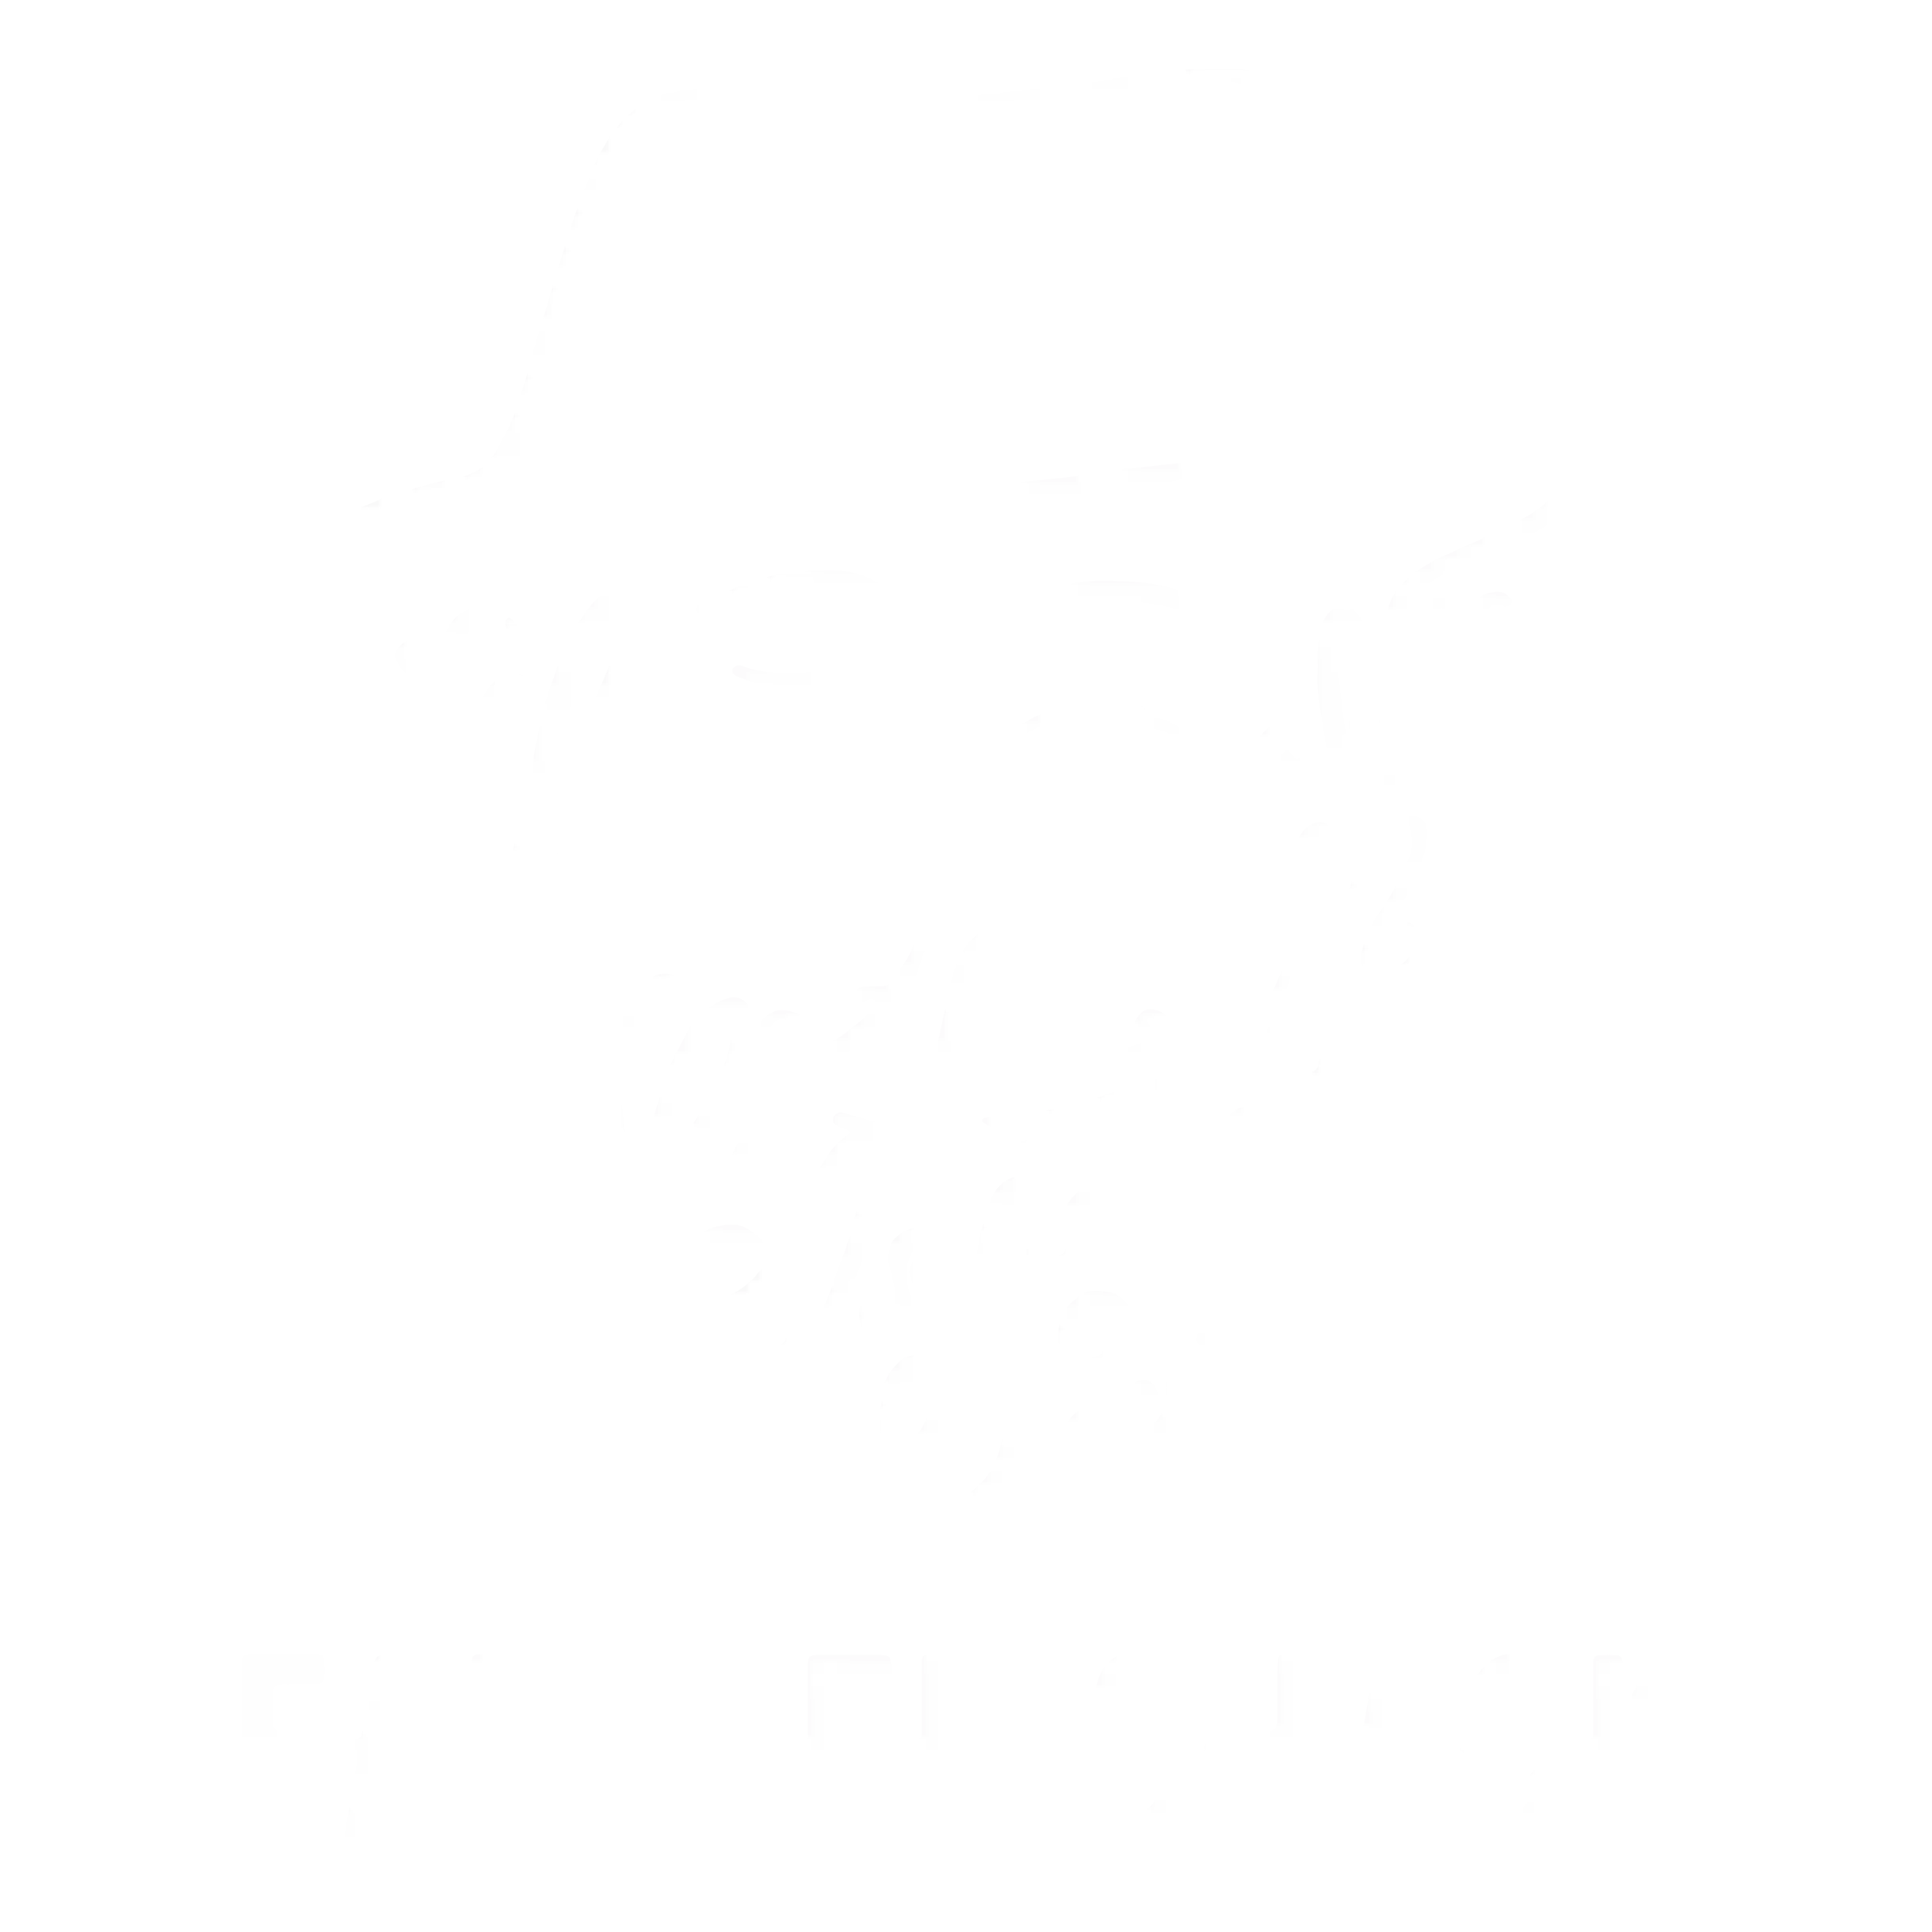 The Falafel Shack